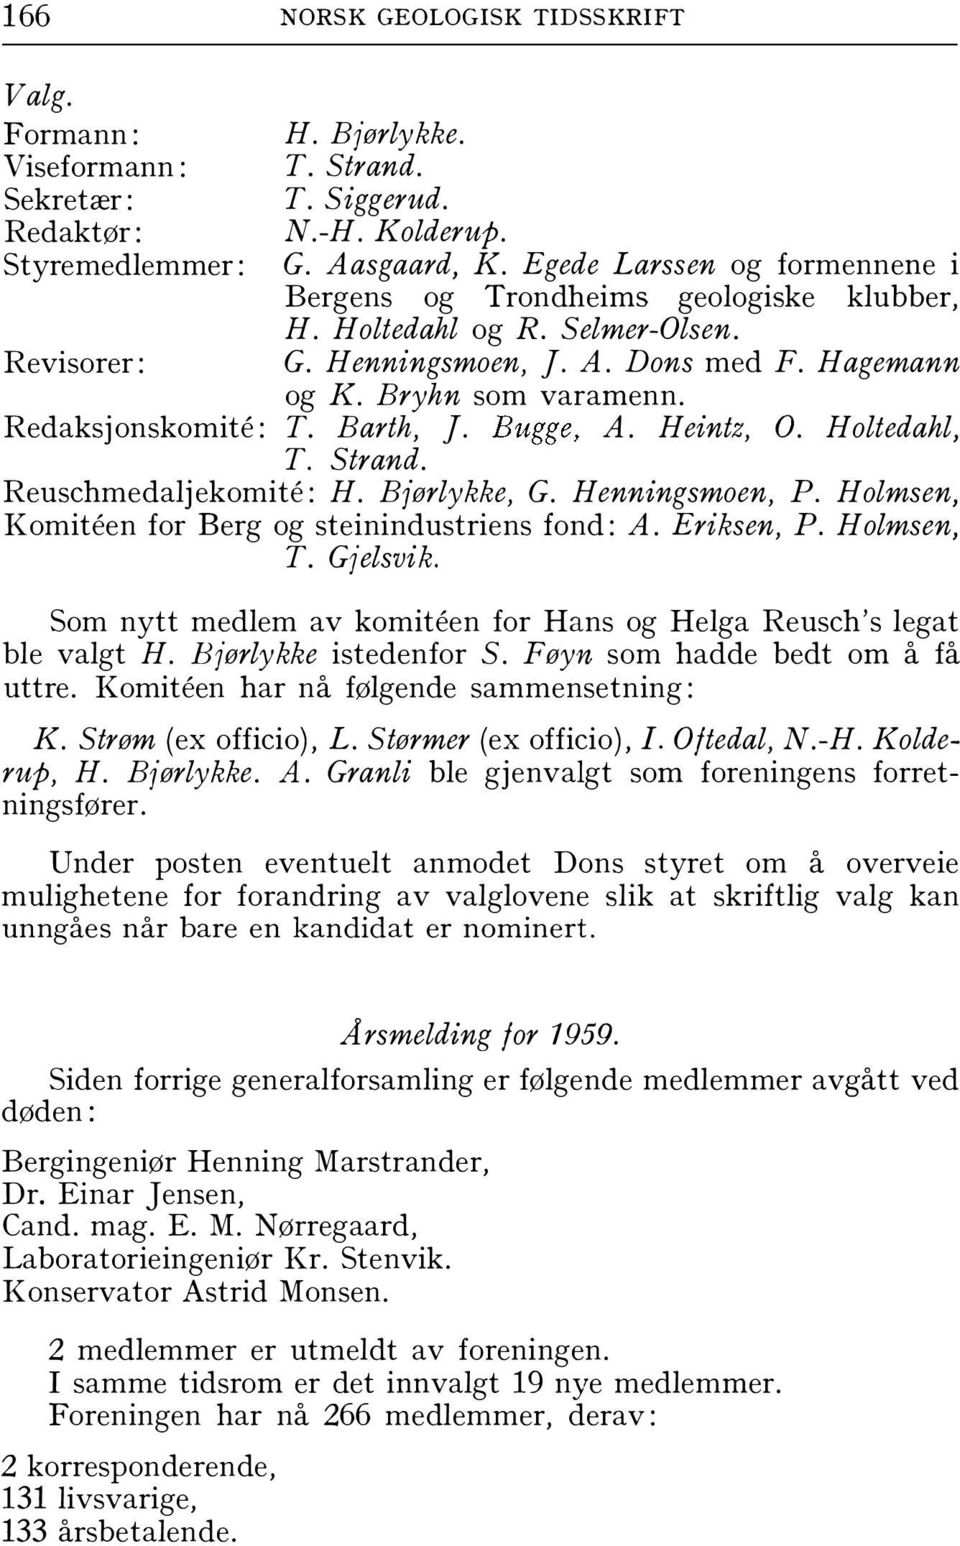 Barth, ]. Bugge. A. Heintz, O. Holtedahl, T. Strand. Reuschmedaljekomite: H. Bjørlykke, G. H enningsmoen, P. Holmsen, Komiteen for Berg og steinindustriens fond: A. Eriksen, P. Holmsen, T. Gjelsvik.